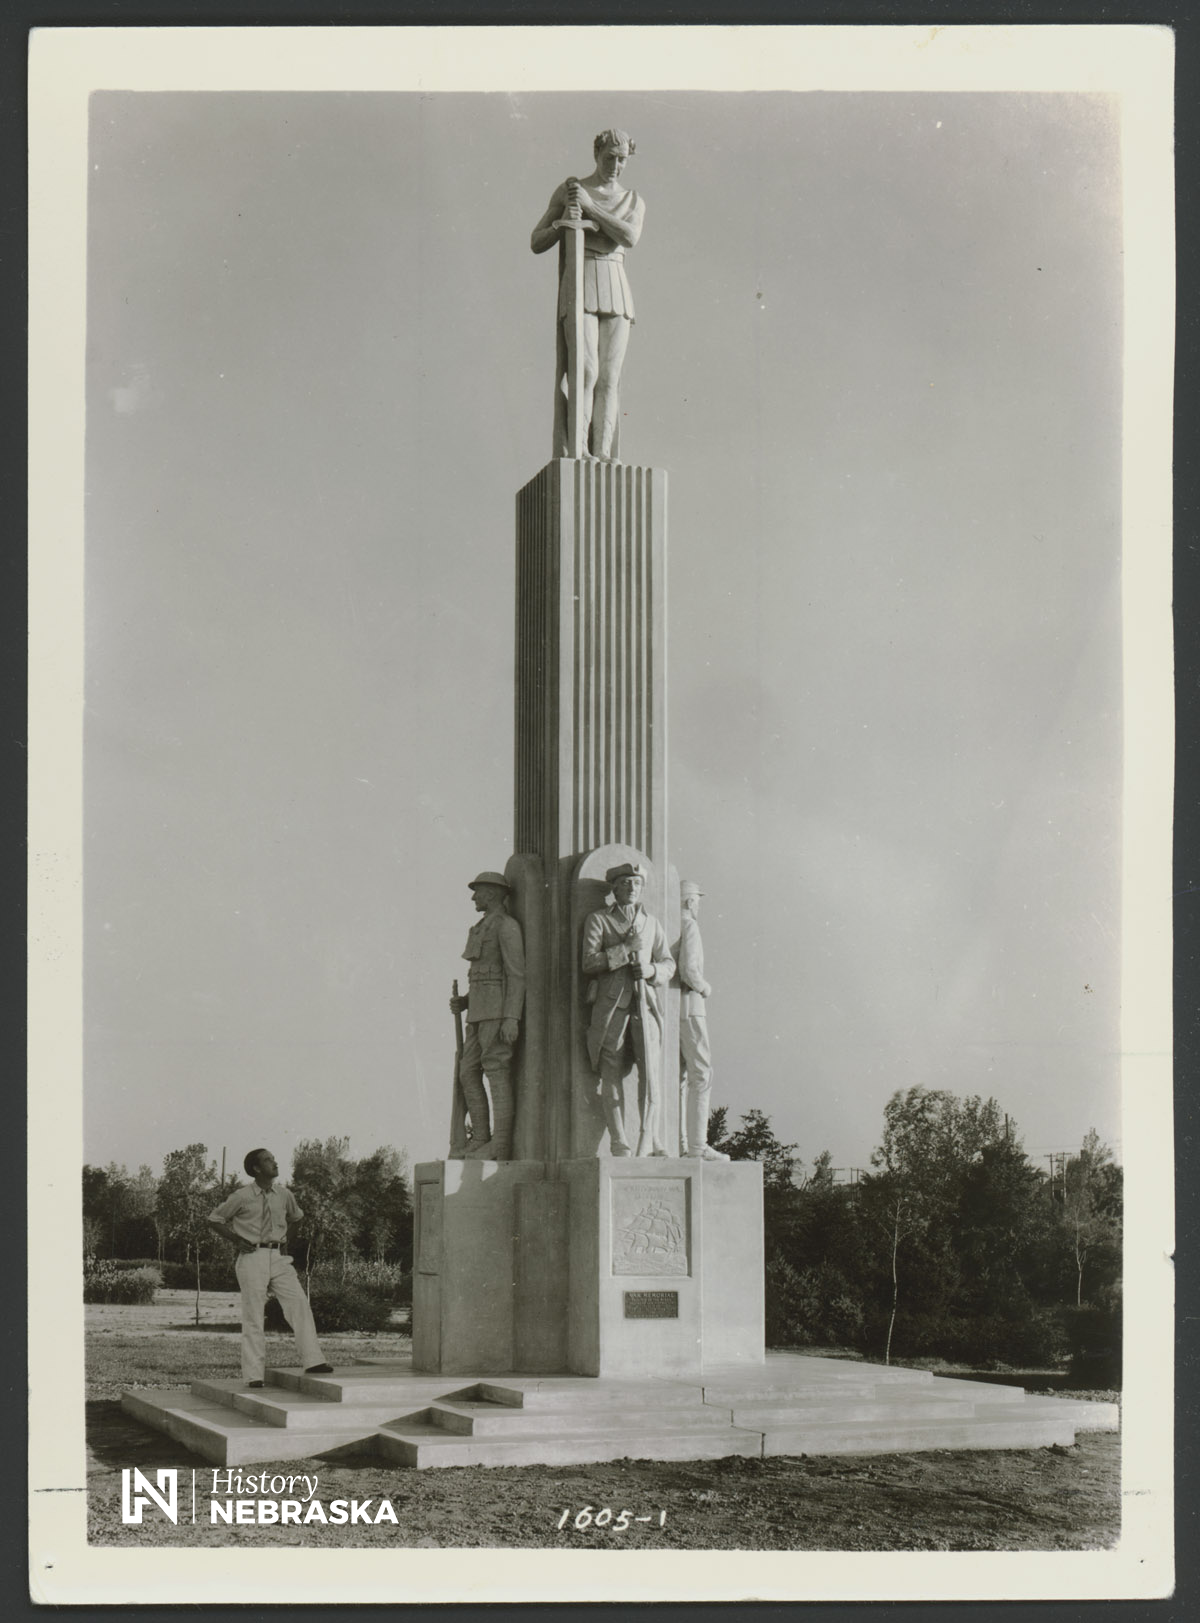 Burman's War Memorial in Antelope Park.